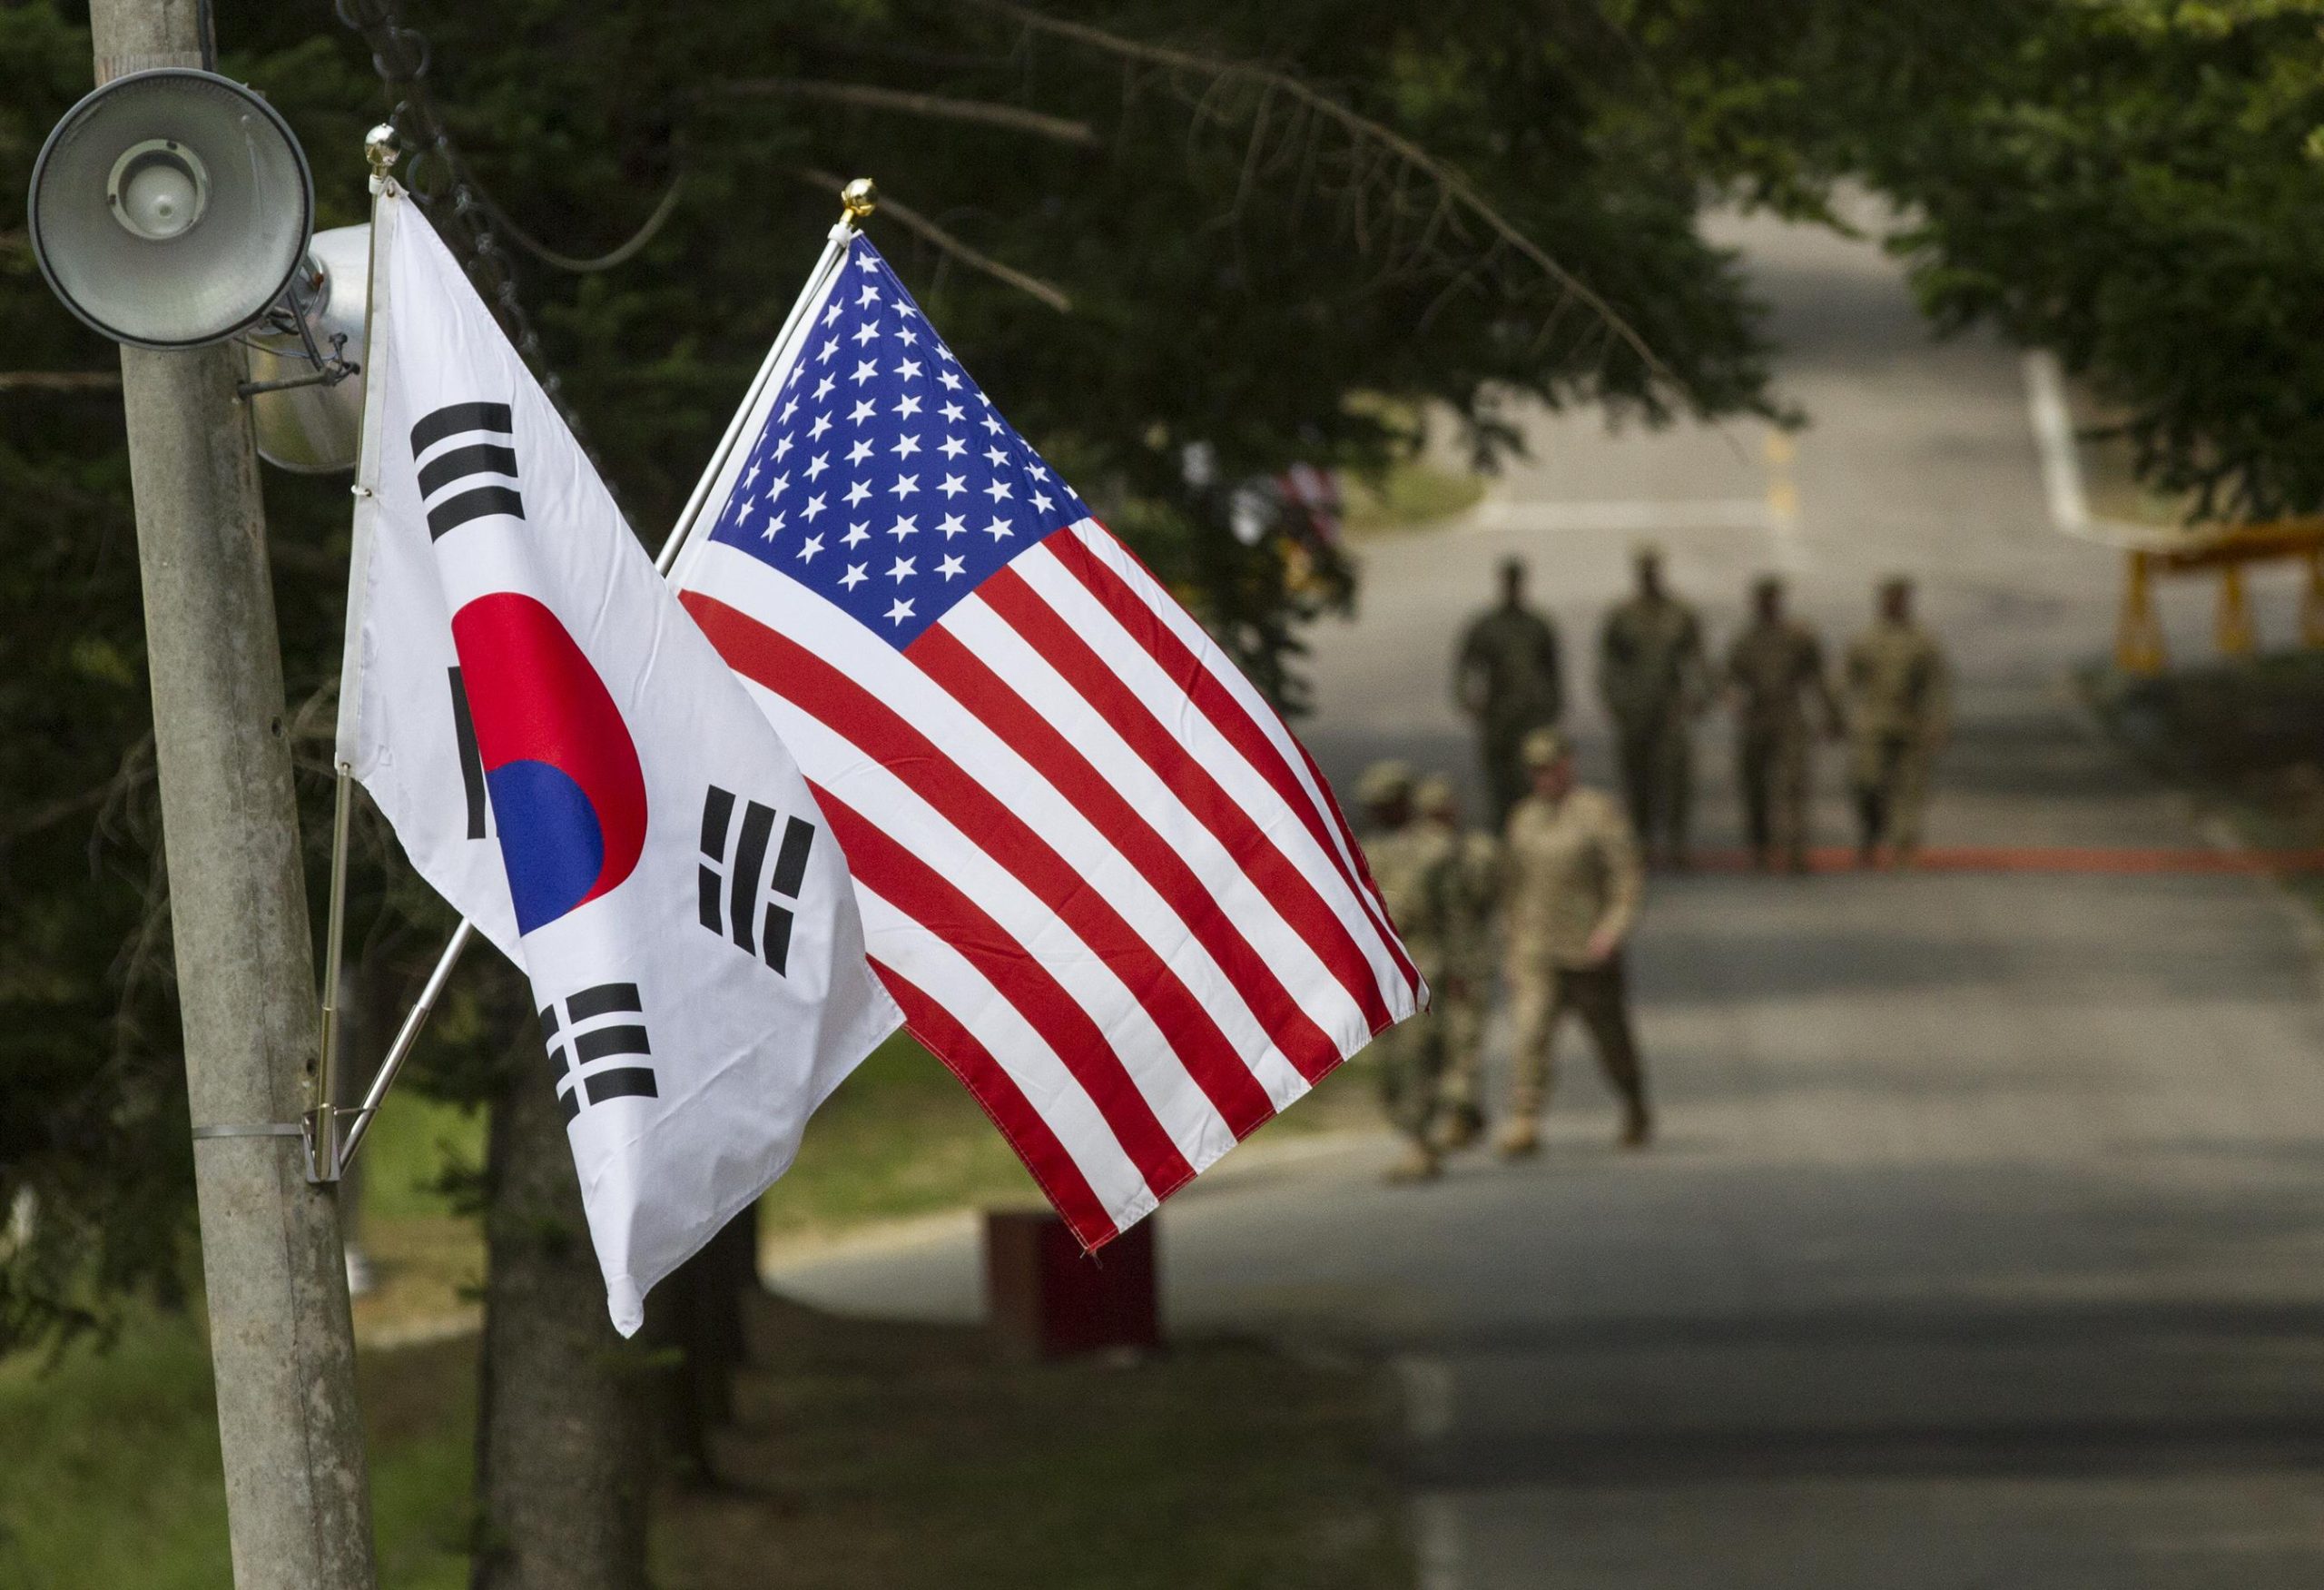 Ν.Κορέα και ΗΠΑ ενώνουν τις δυνάμεις τους κατά της Πιονγκγιάνγκ- Νέες κυρώσεις